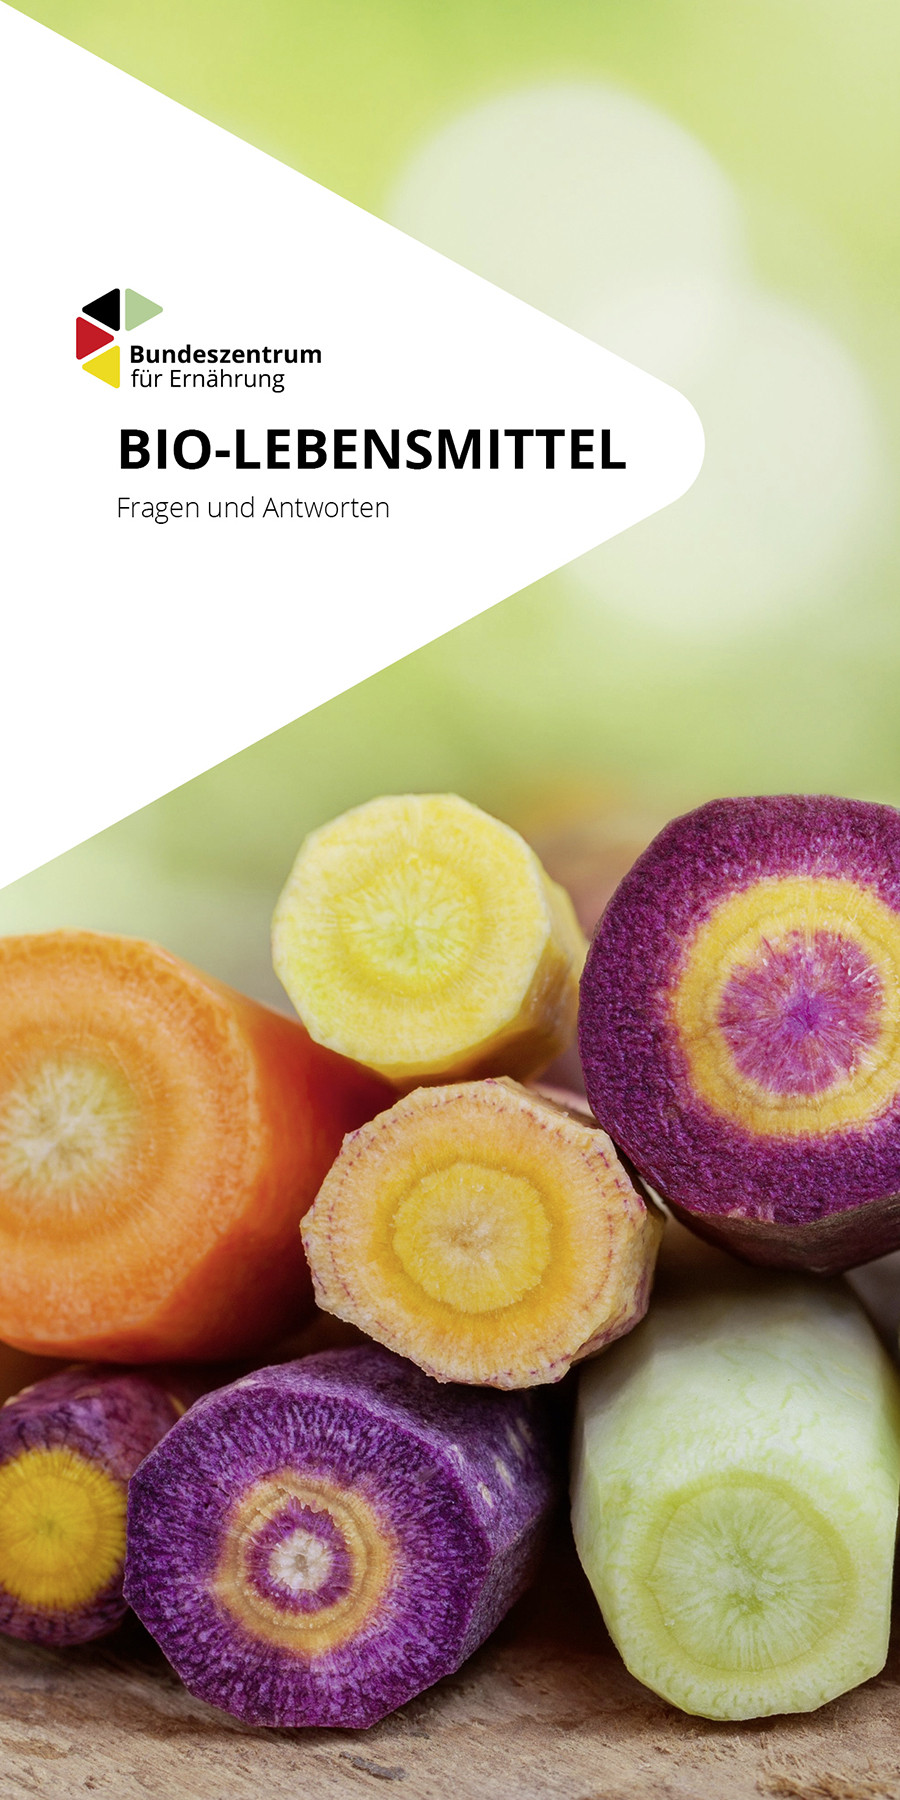 Bio-Lebensmittel - Fragen und Antworten